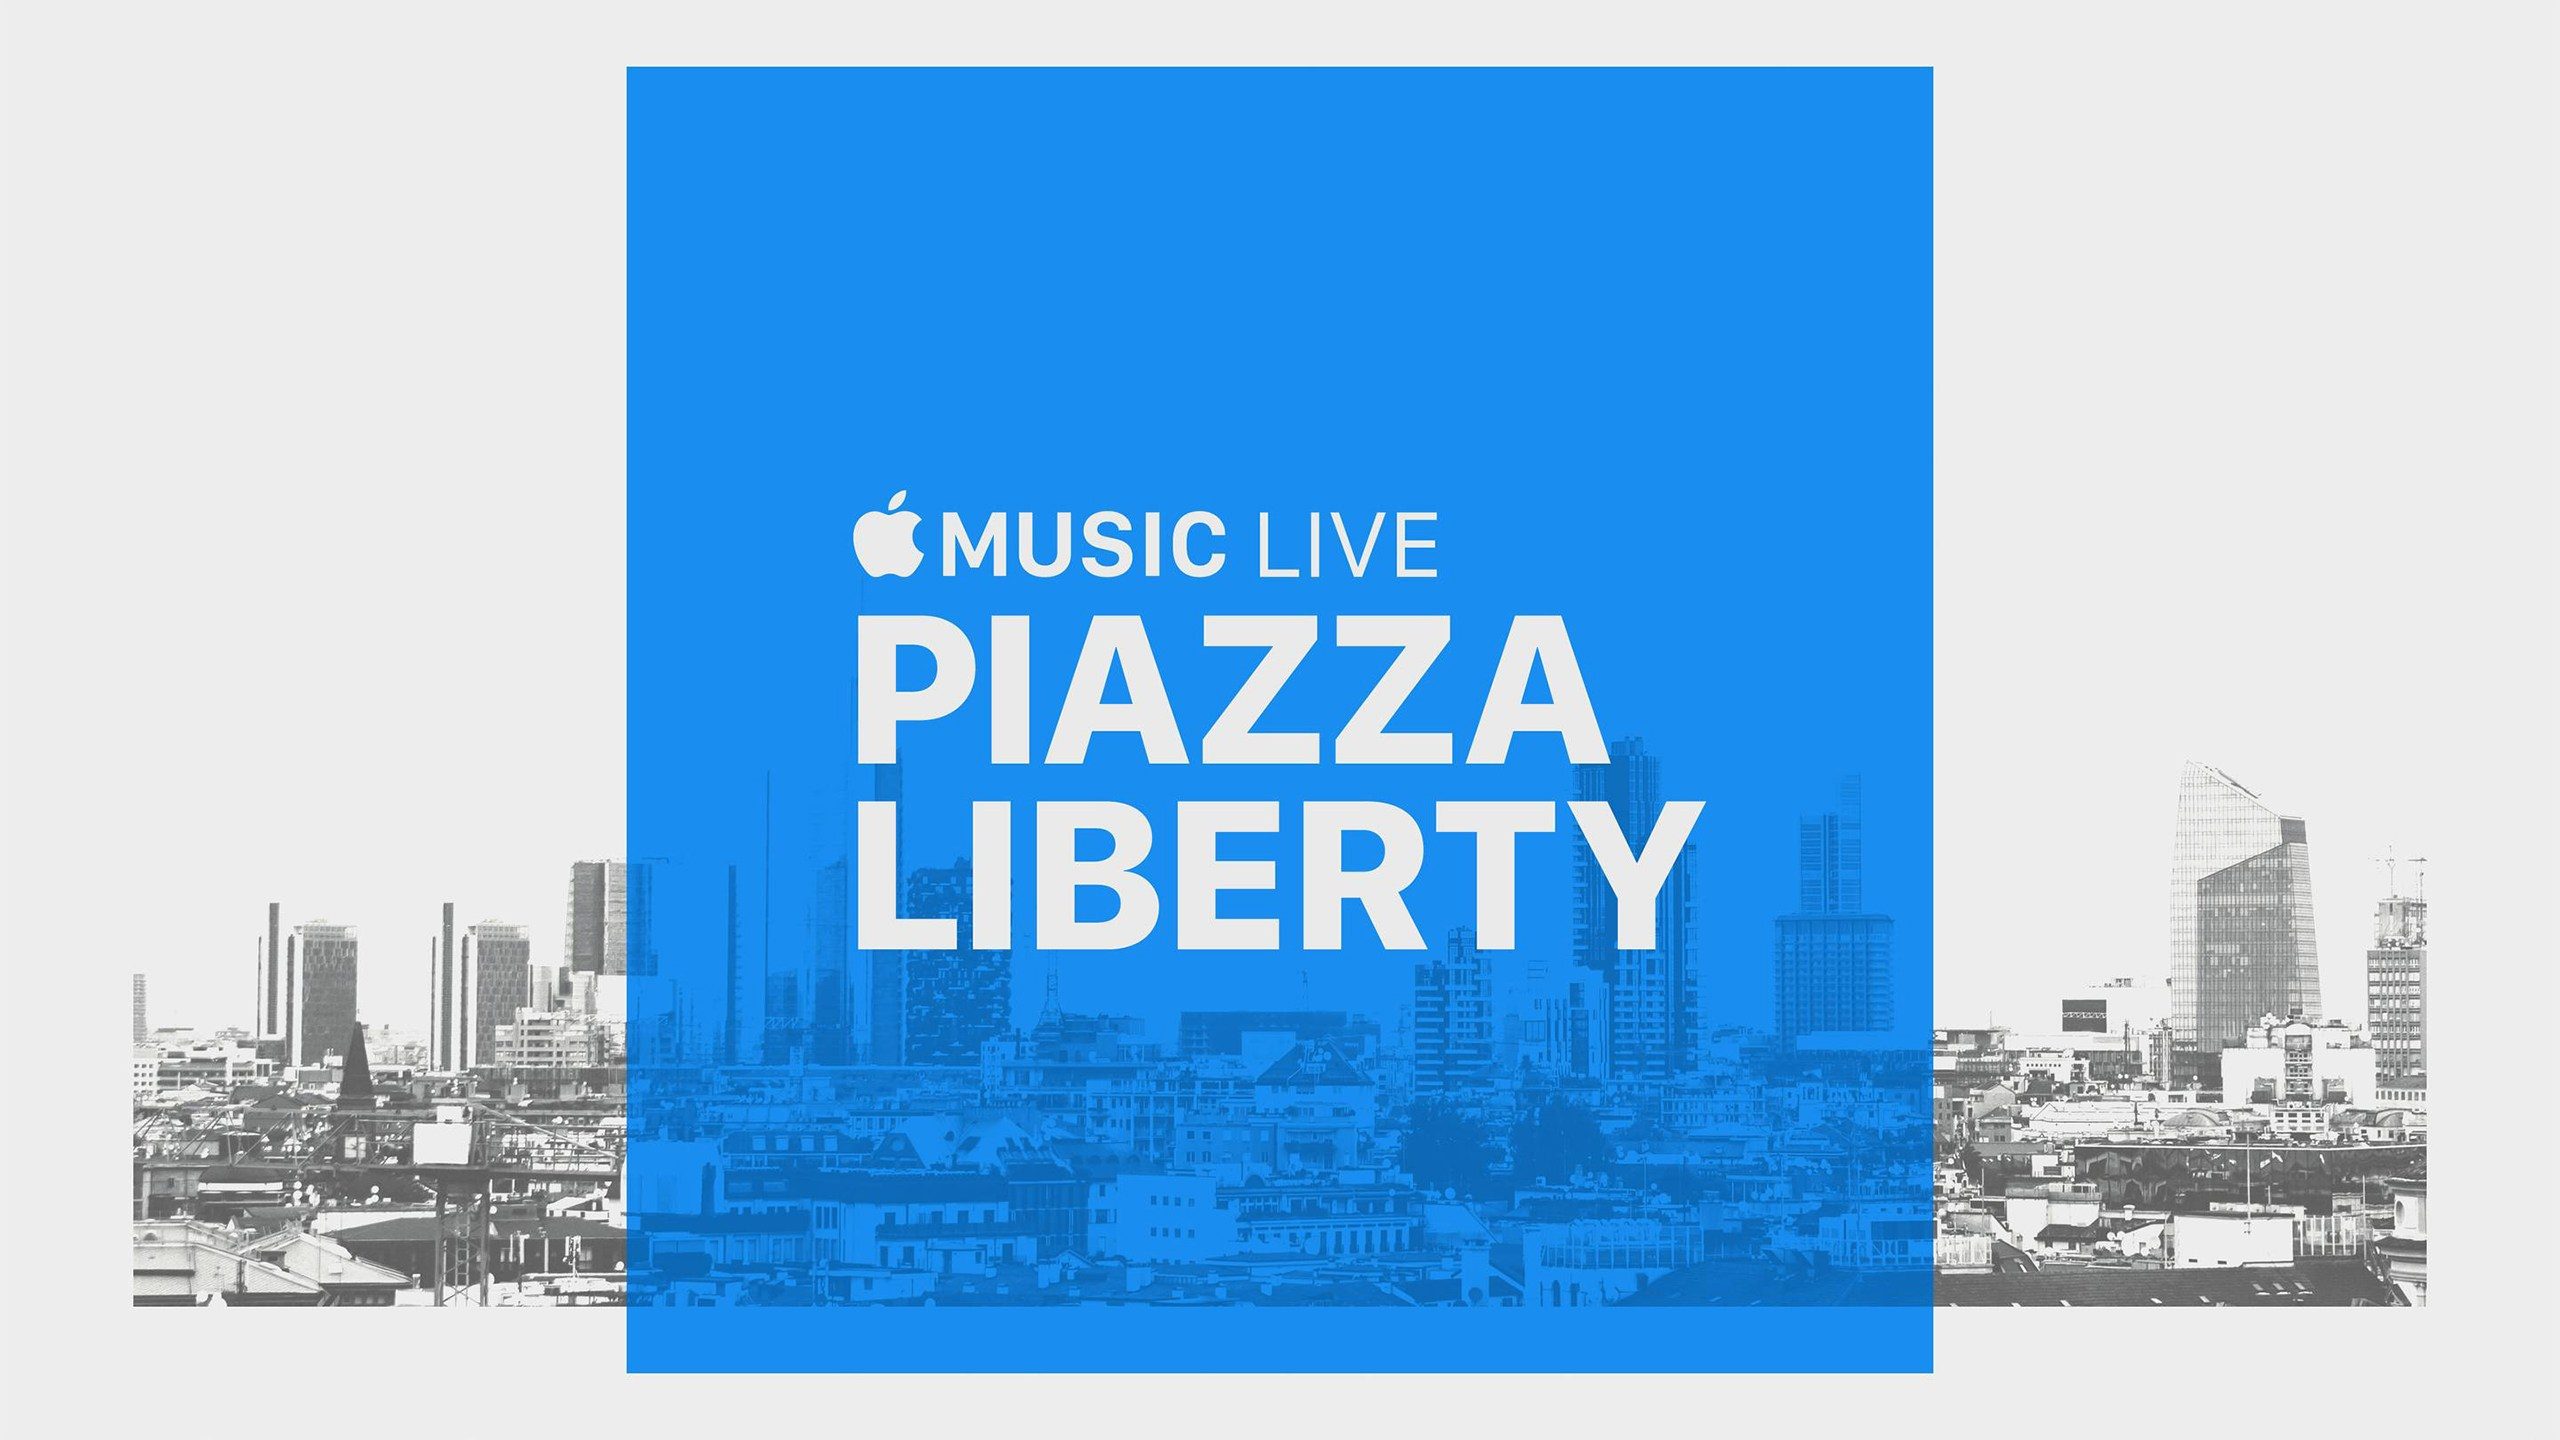 Apple Music Live, série de concertos na Apple Piazza Liberty em Milão (Itália)